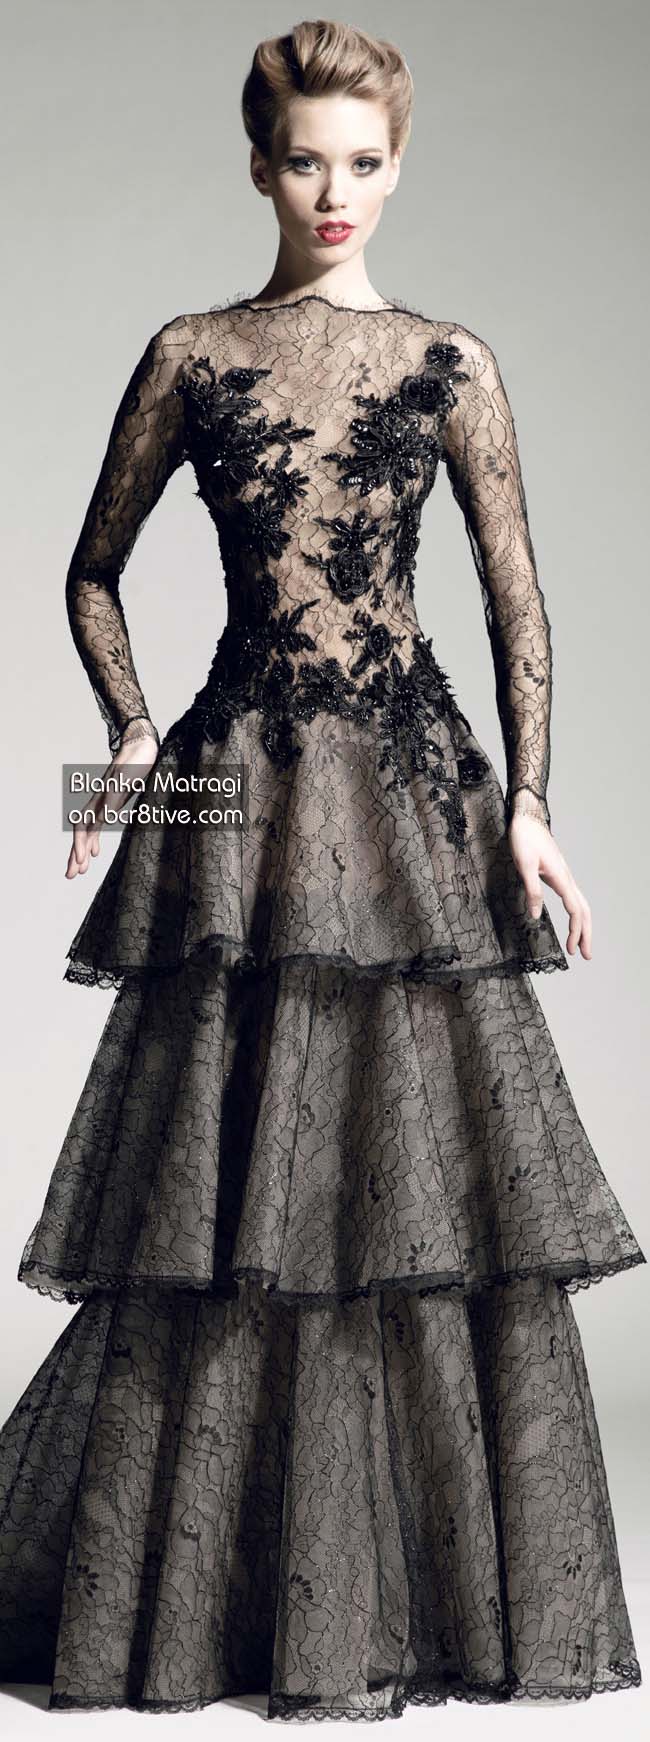 Бланка Матраги моде платья 2013